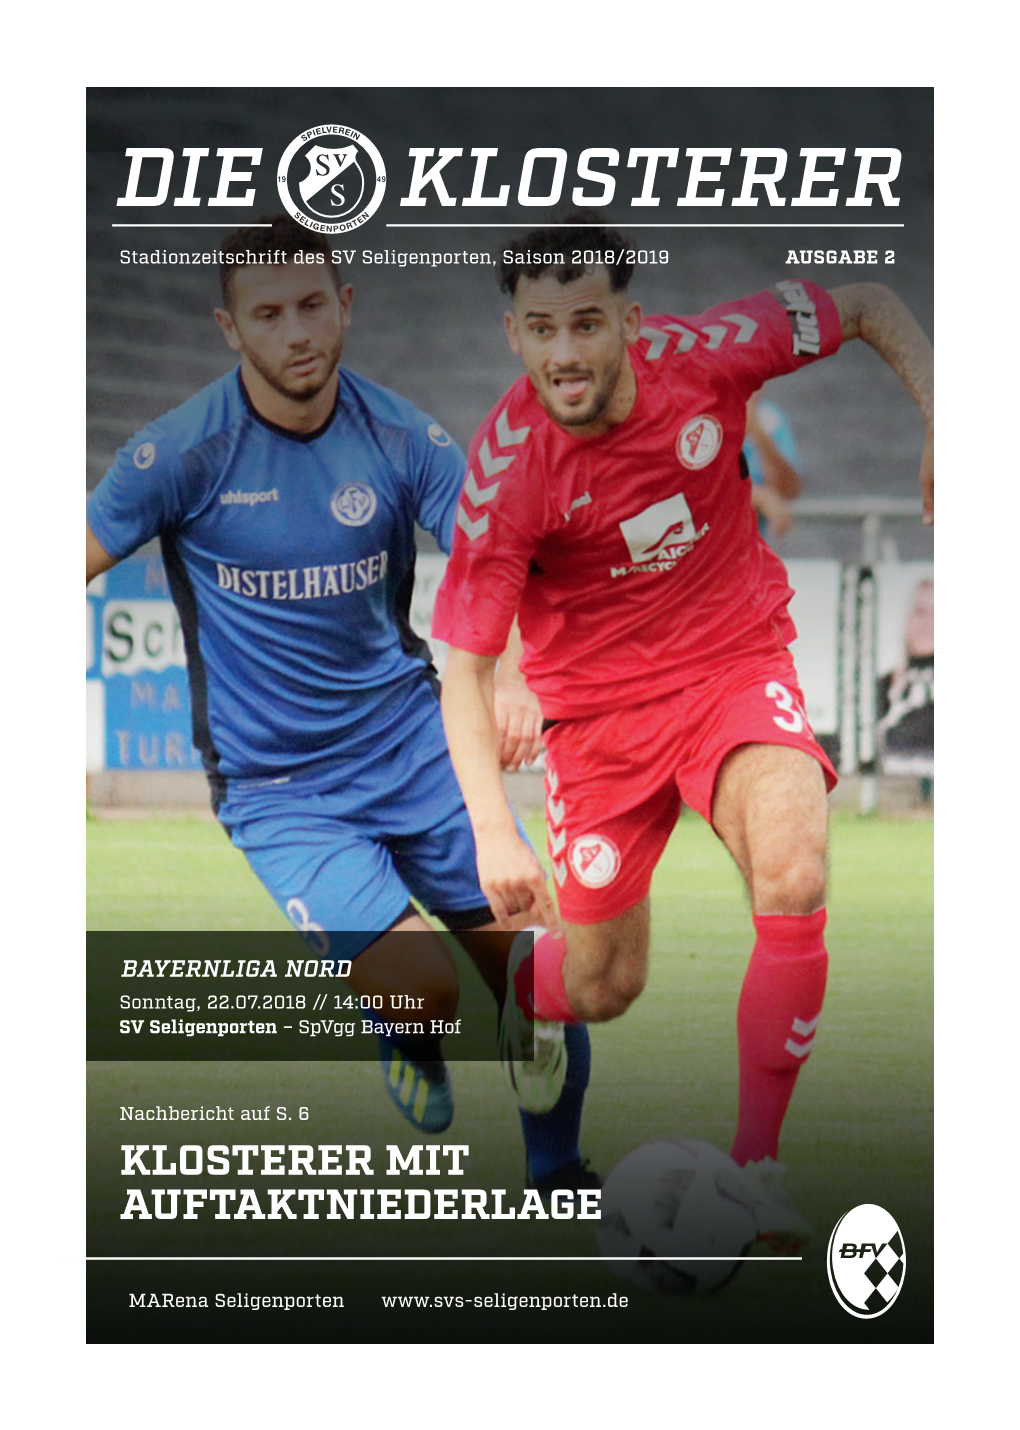 DIE KLOSTERER Stadionzeitschrift Des SV Seligenporten, Saison 2018/2019 AUSGABE 2